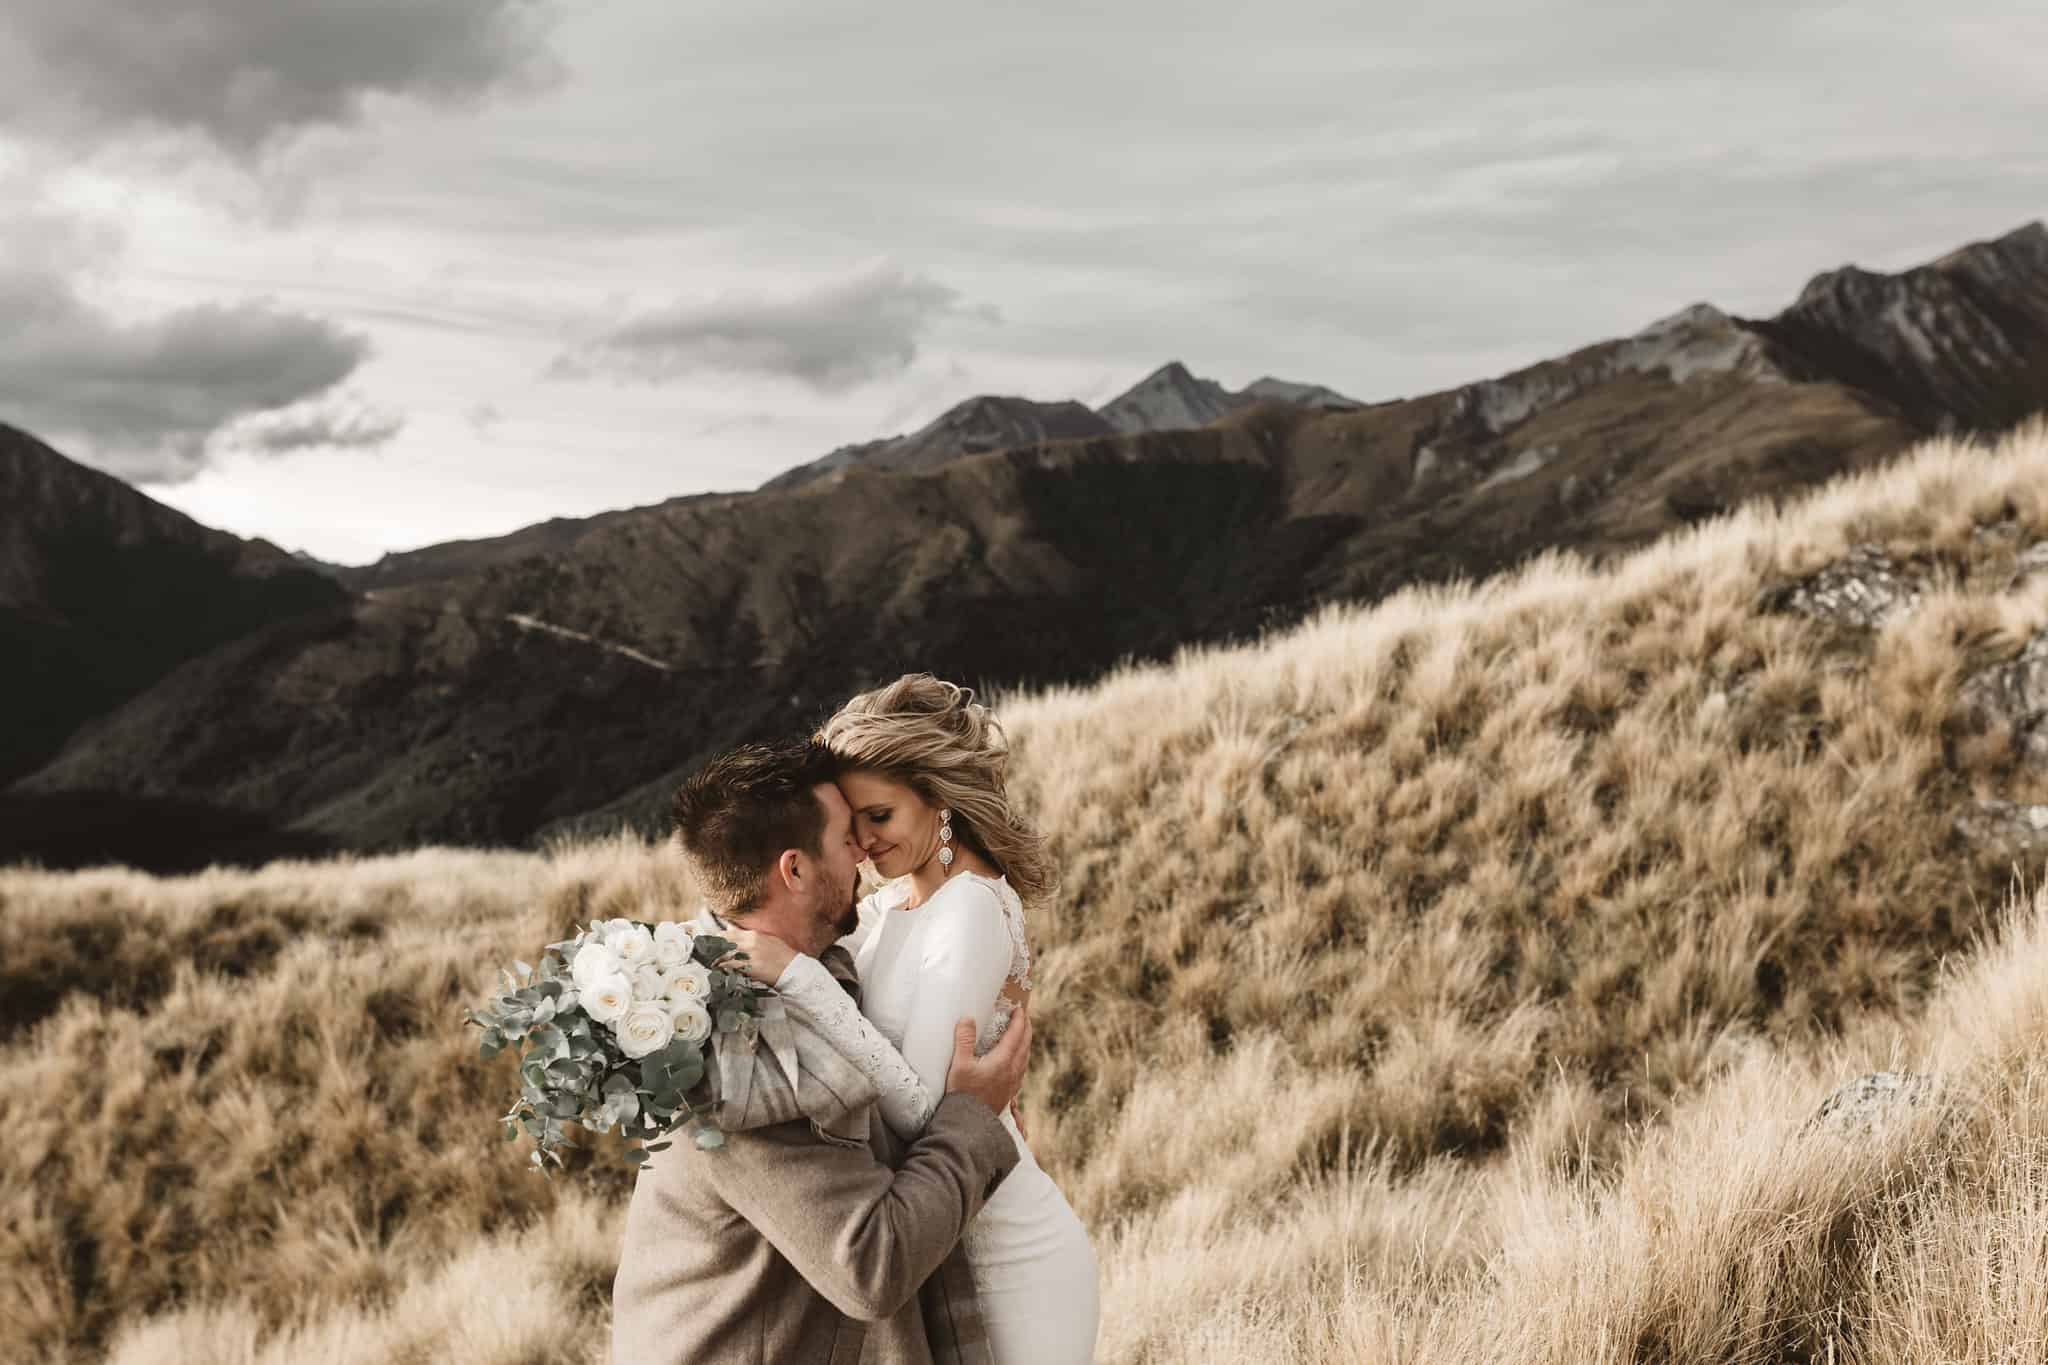 Winter Elopement Wedding Queenstown New Zealand Heli Weddings We Eloped Dawn Thomson 6